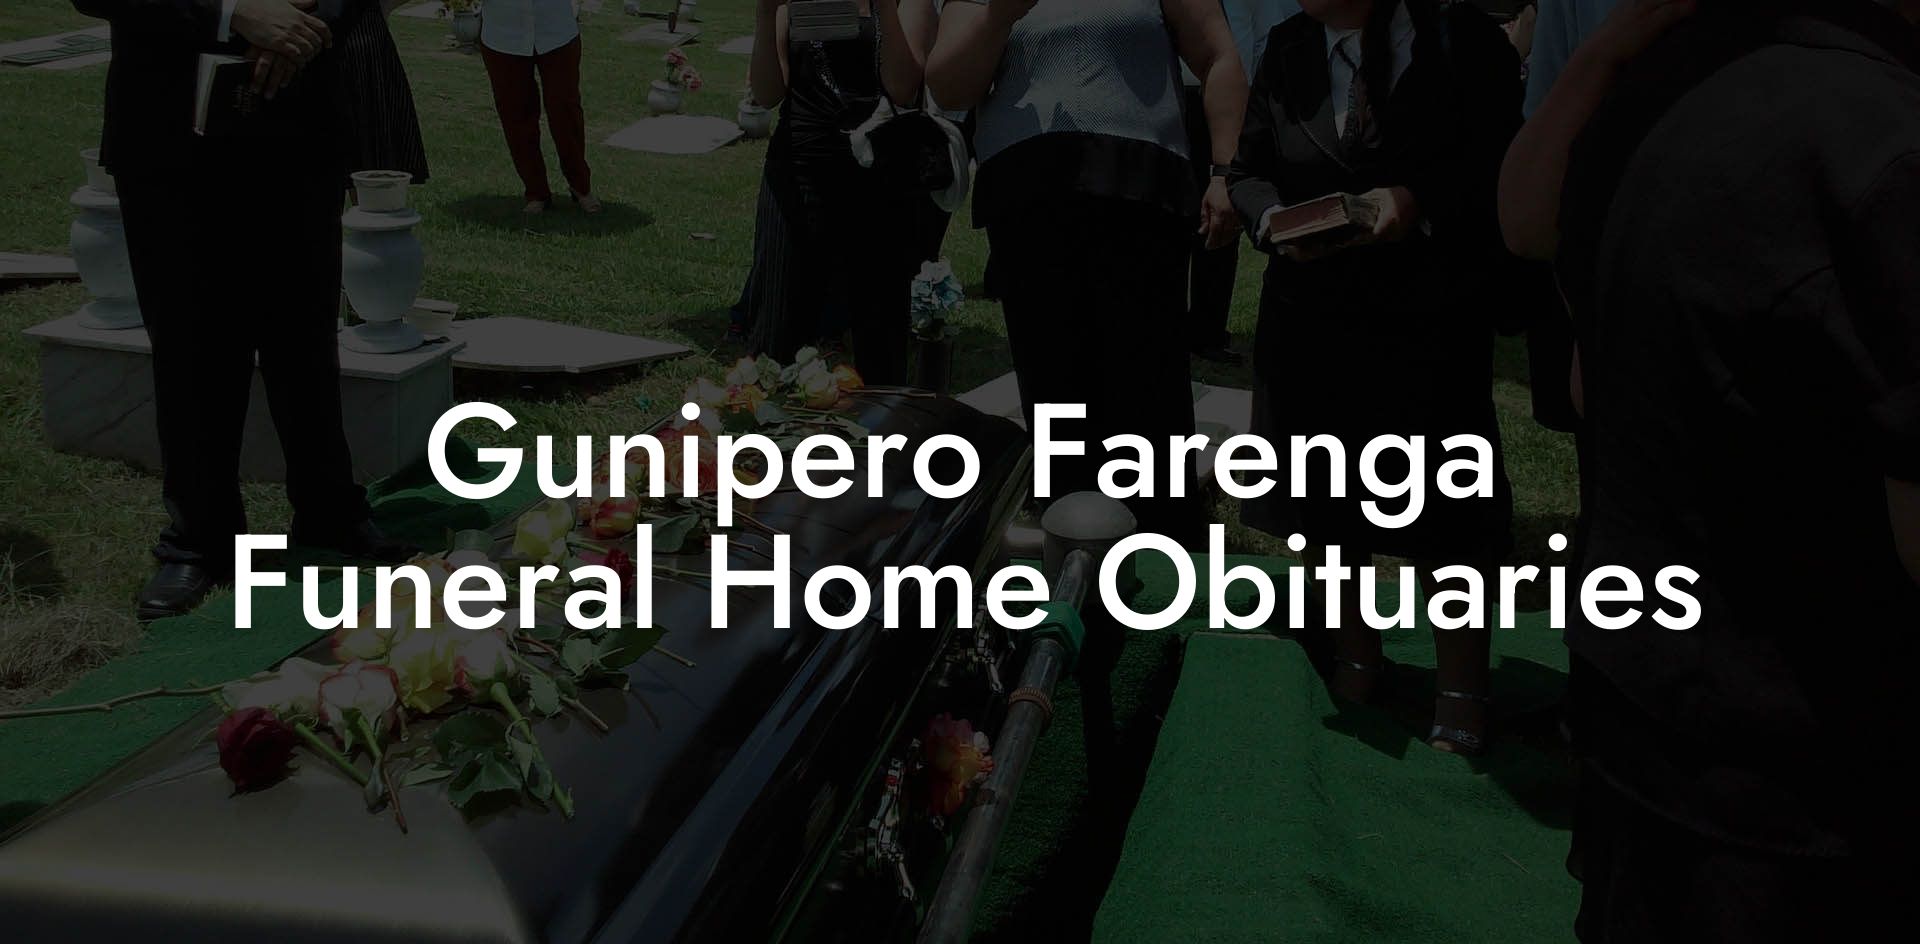 Gunipero Farenga Funeral Home Obituaries